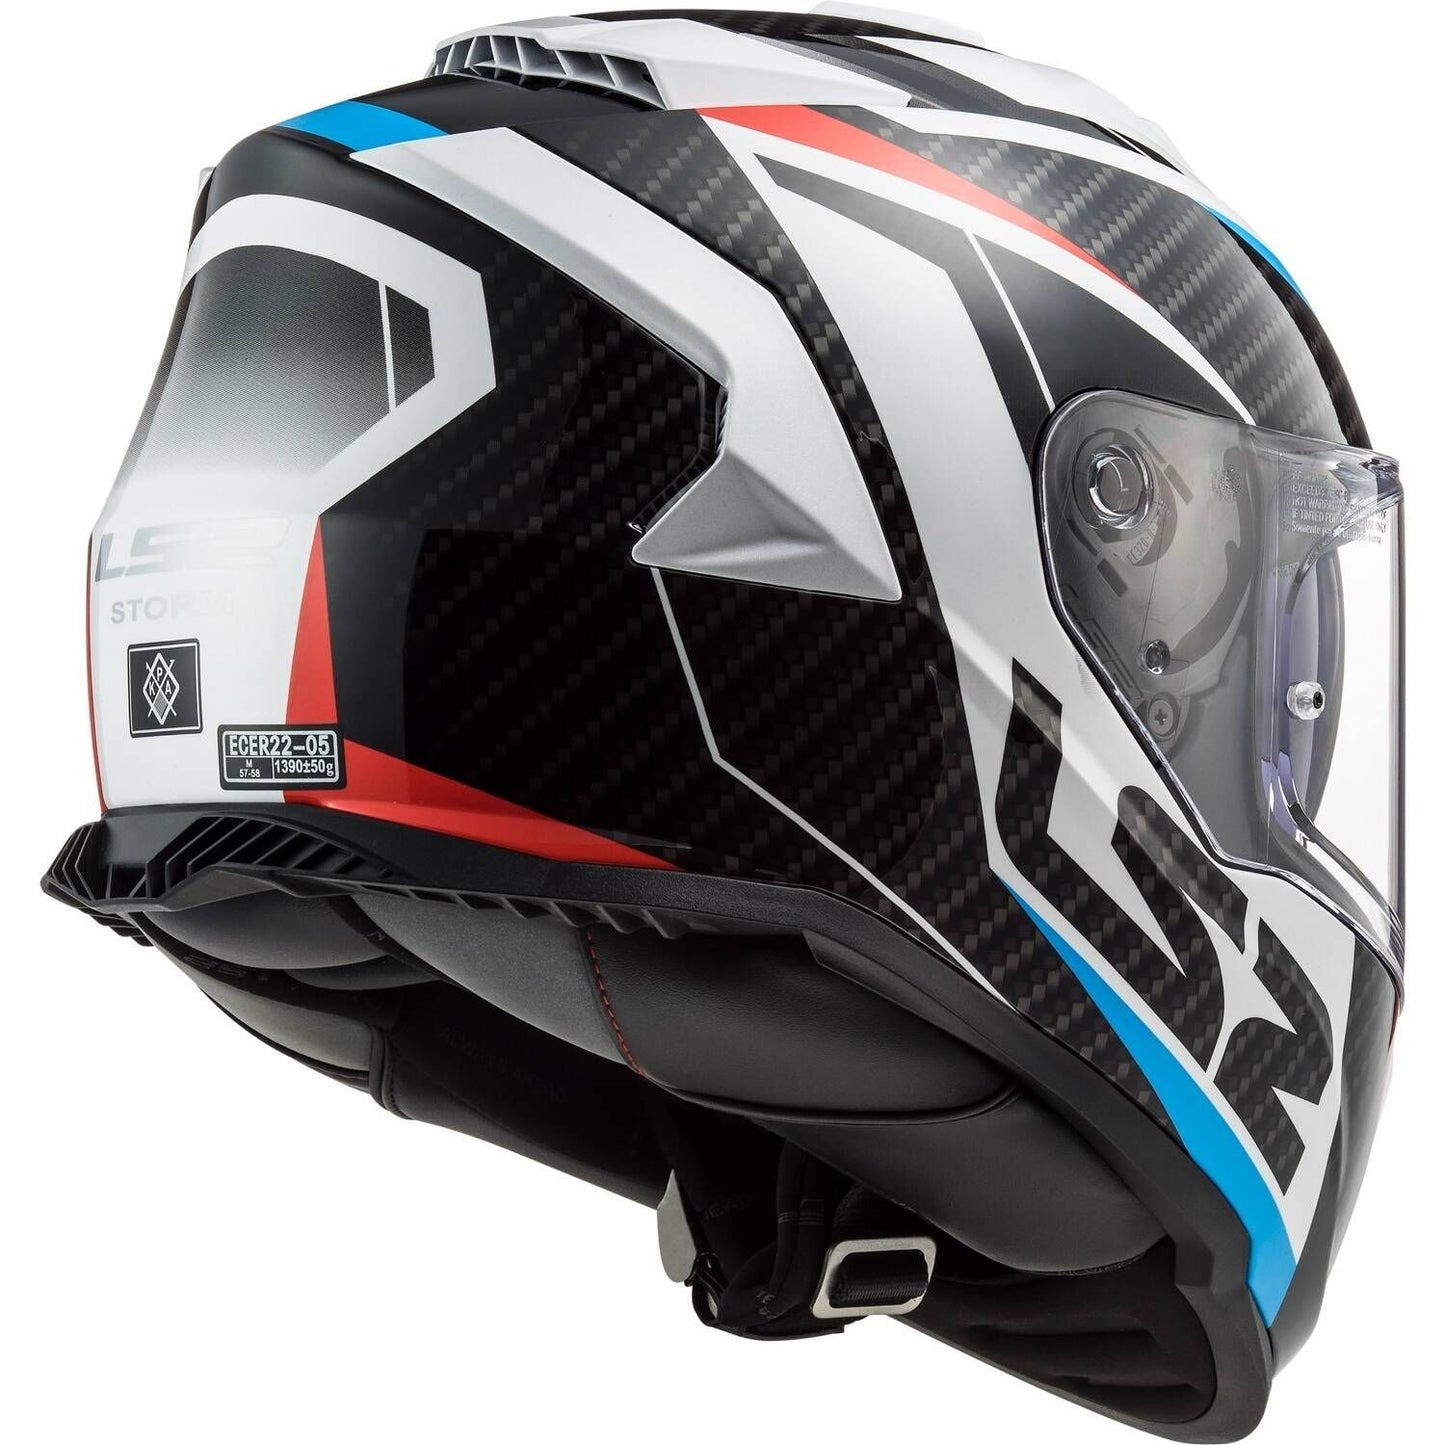 LS2 Assault Racer Helmet - White/Red/Blue